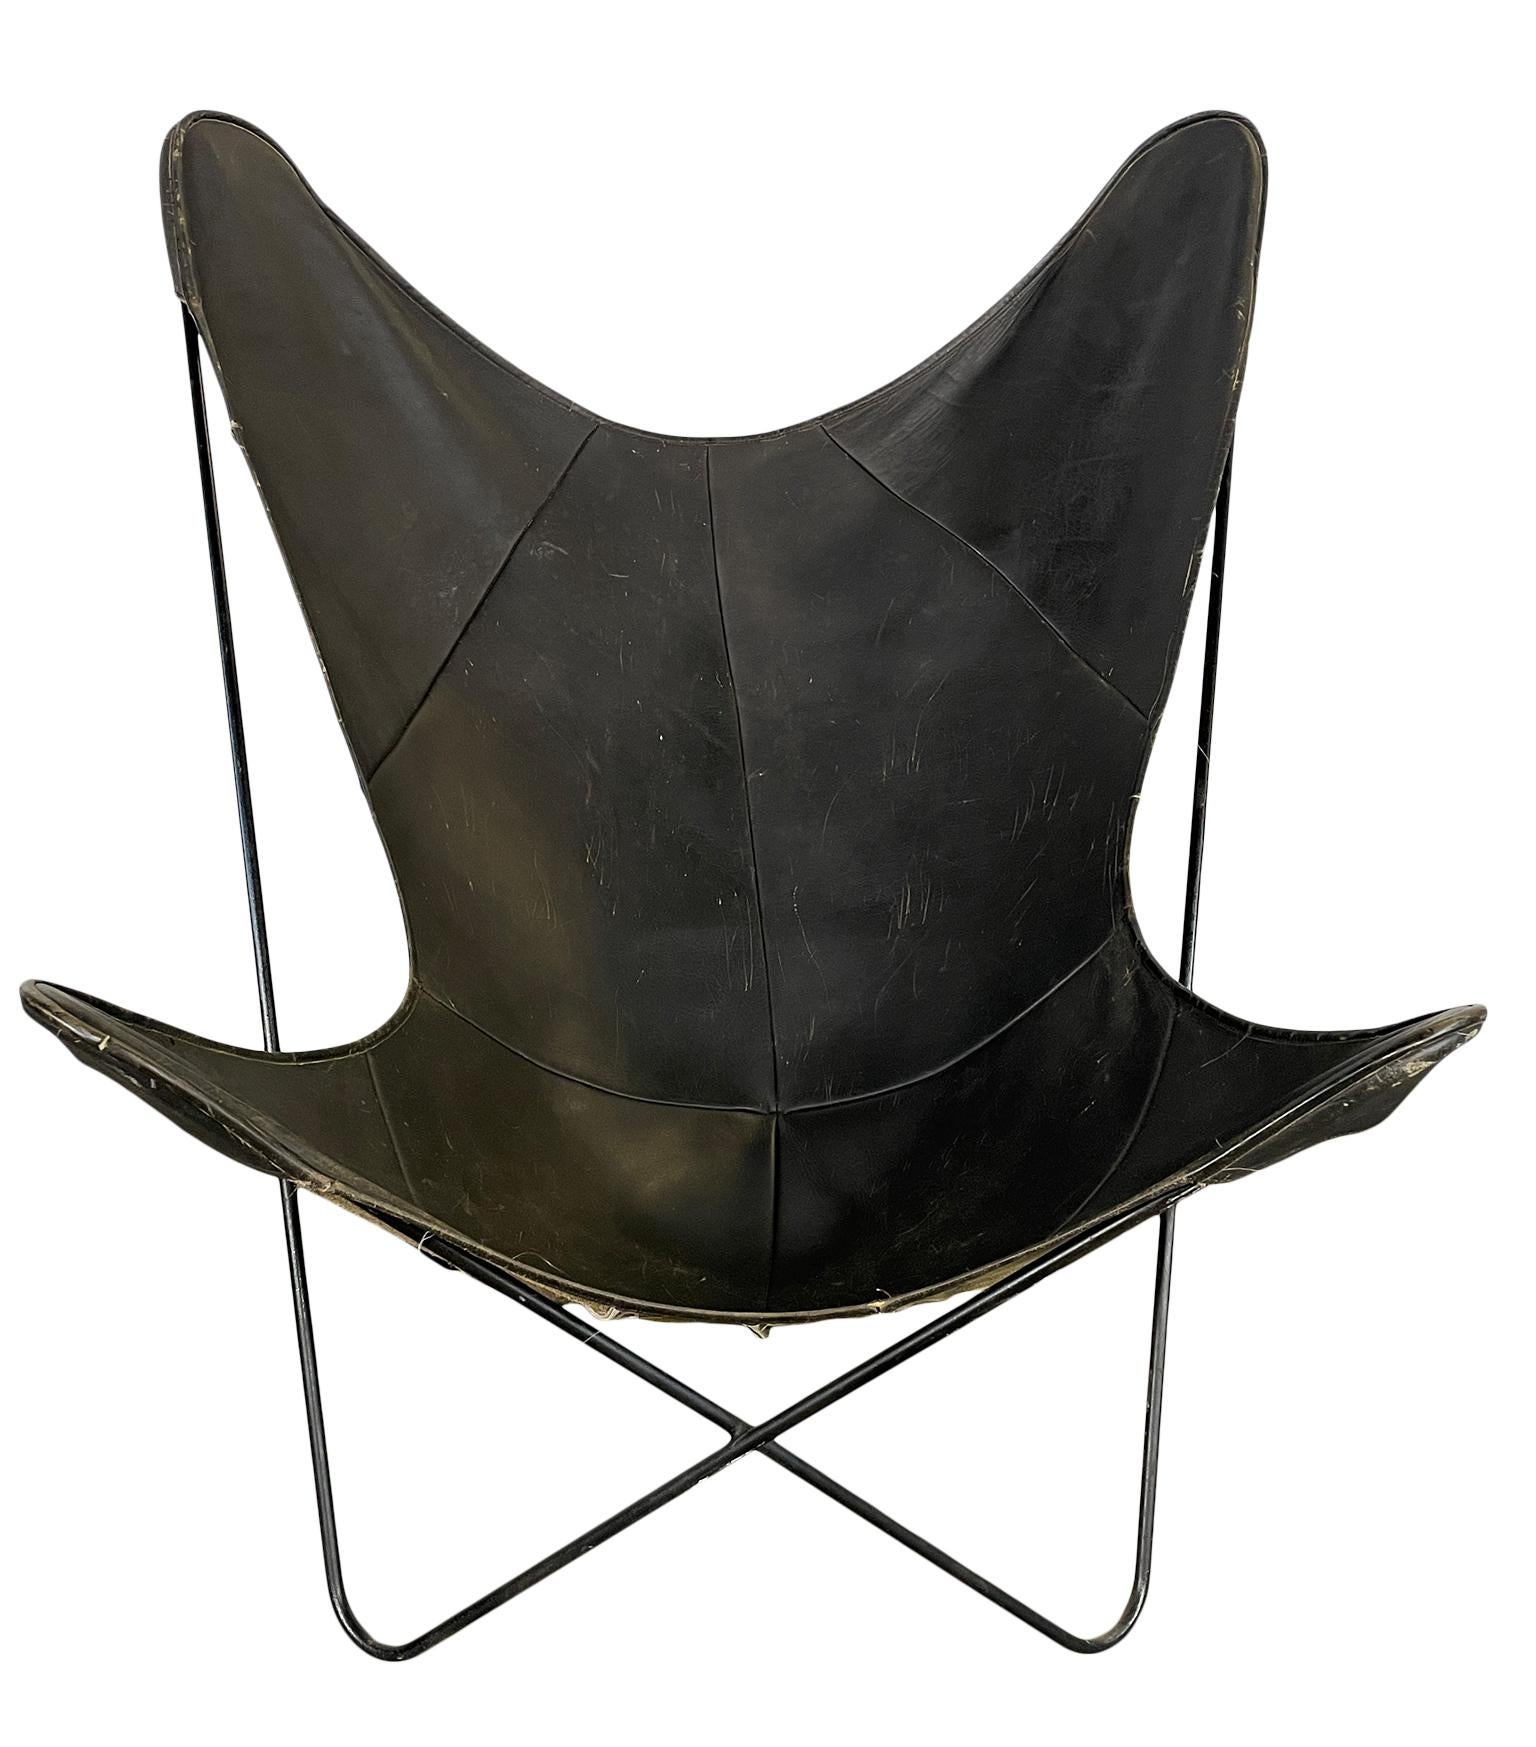 Original Mitte des Jahrhunderts schwarz Eisen Leder Schmetterling Stuhl schöne Patina. Alle ursprünglichen Stuhl das Leder zeigt Verschleiß verwenden einige Schrammen, aber insgesamt schönen Zustand und 100% Struktur. Sehr filigranes Design. Das